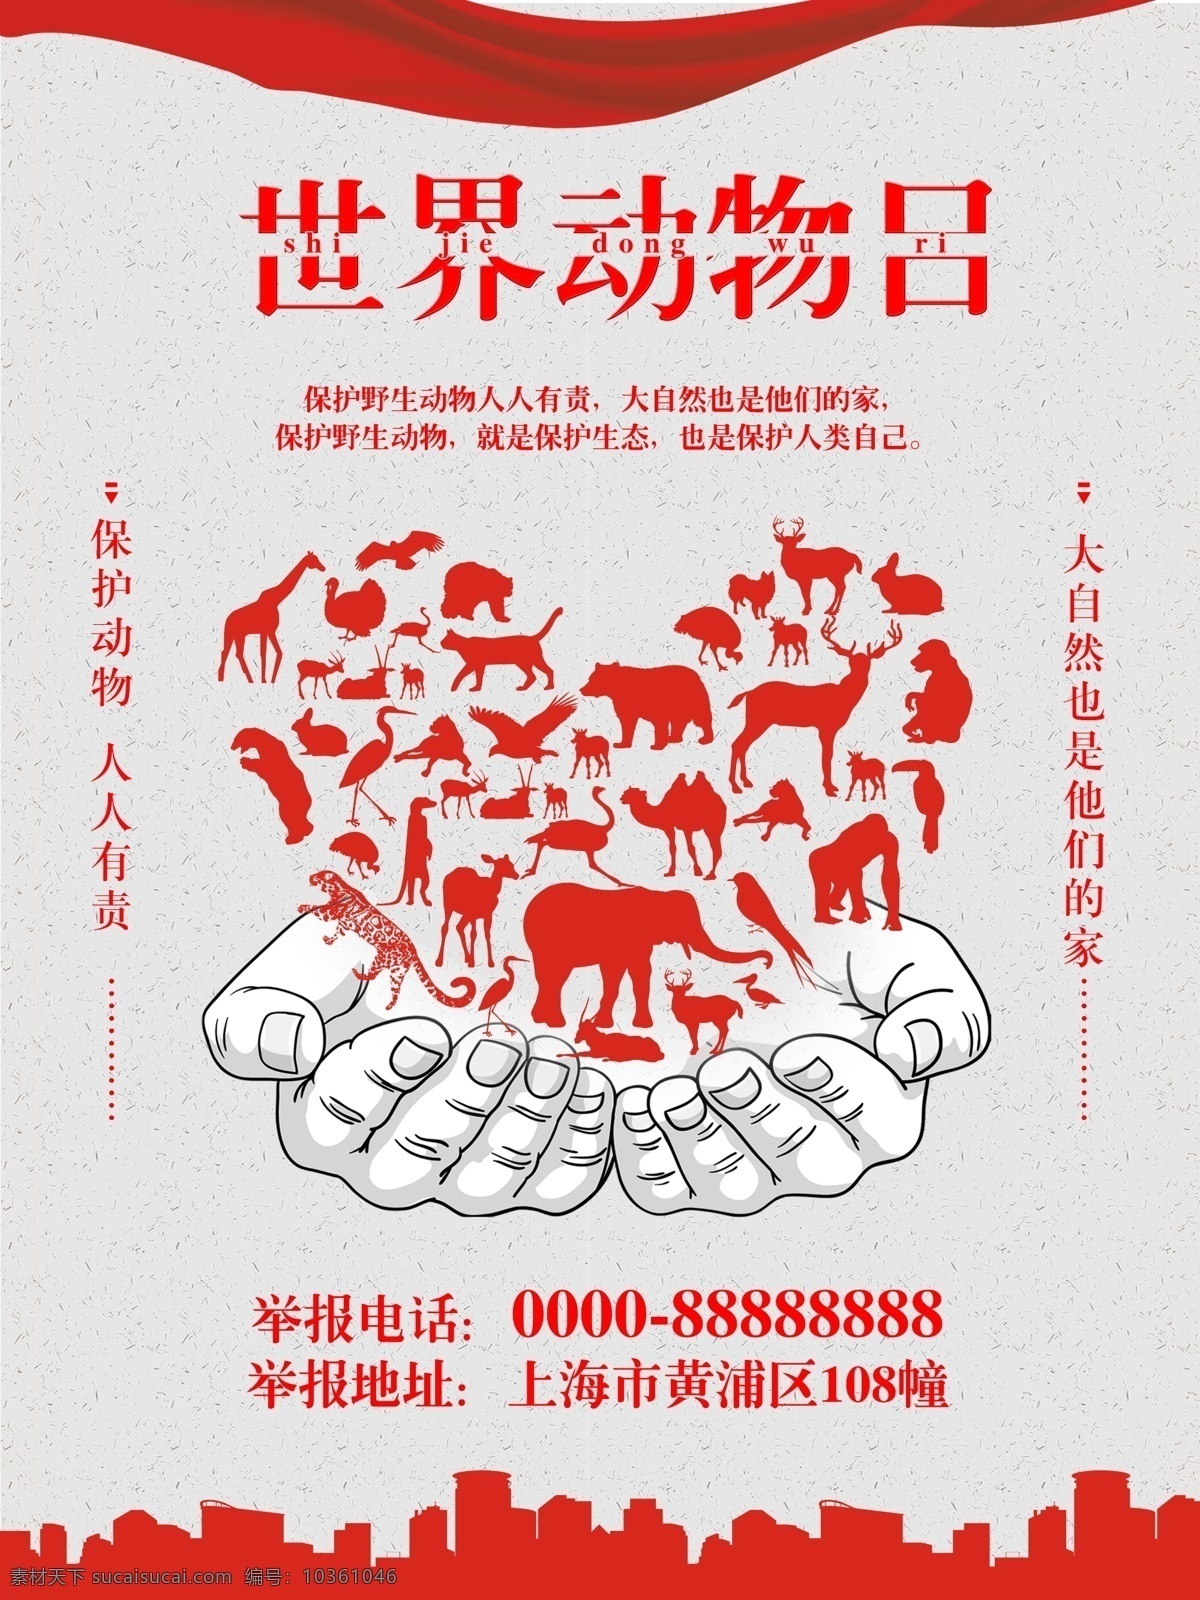 世界 动物 日 保护 世界动物日 动物大全 爱心动物 手绘双手 保护动物 动物日 红 灰色 简约 海报